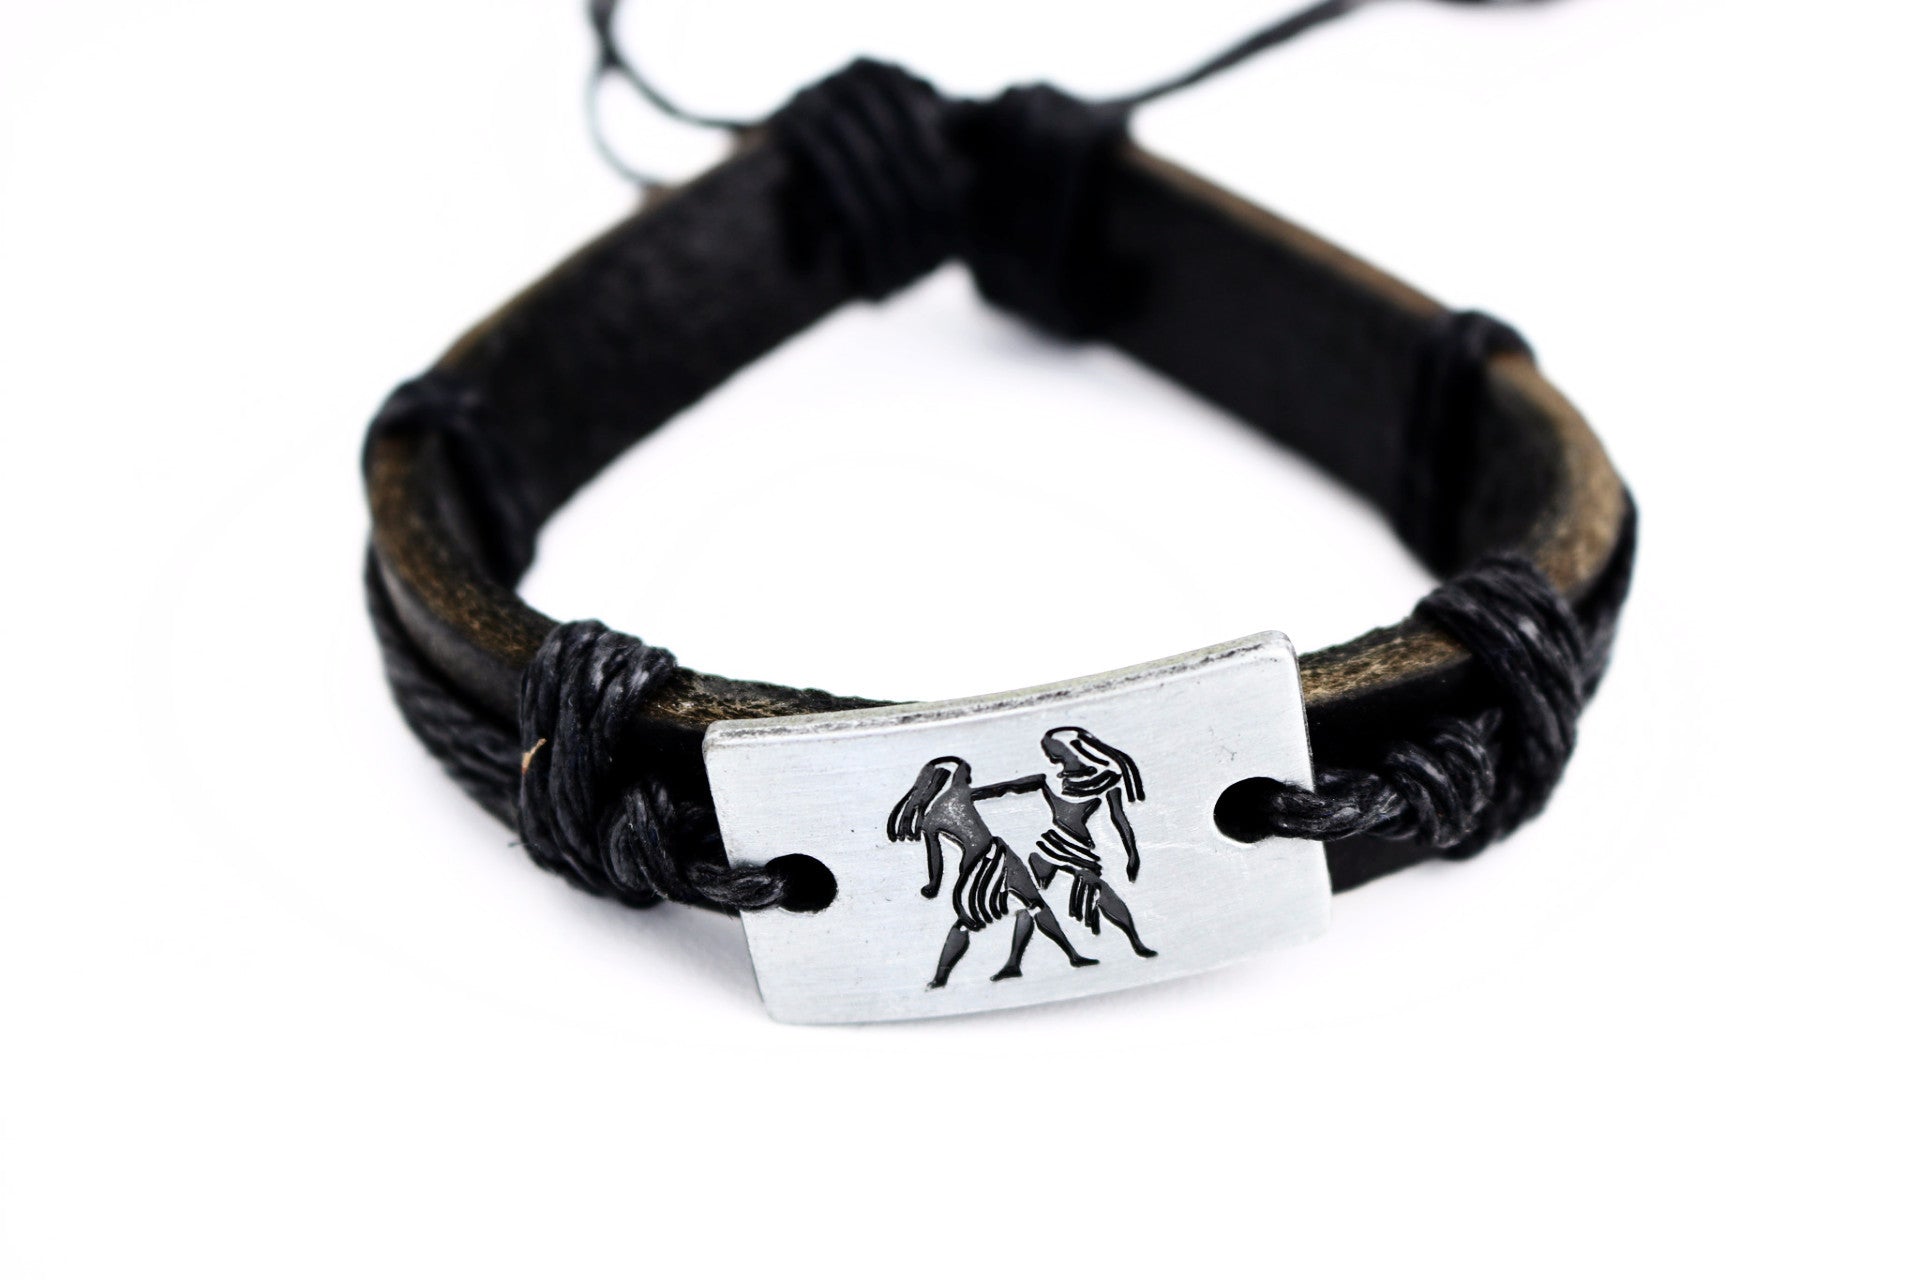 Gemini Leather Cuff Bracelet - Lulugem.com